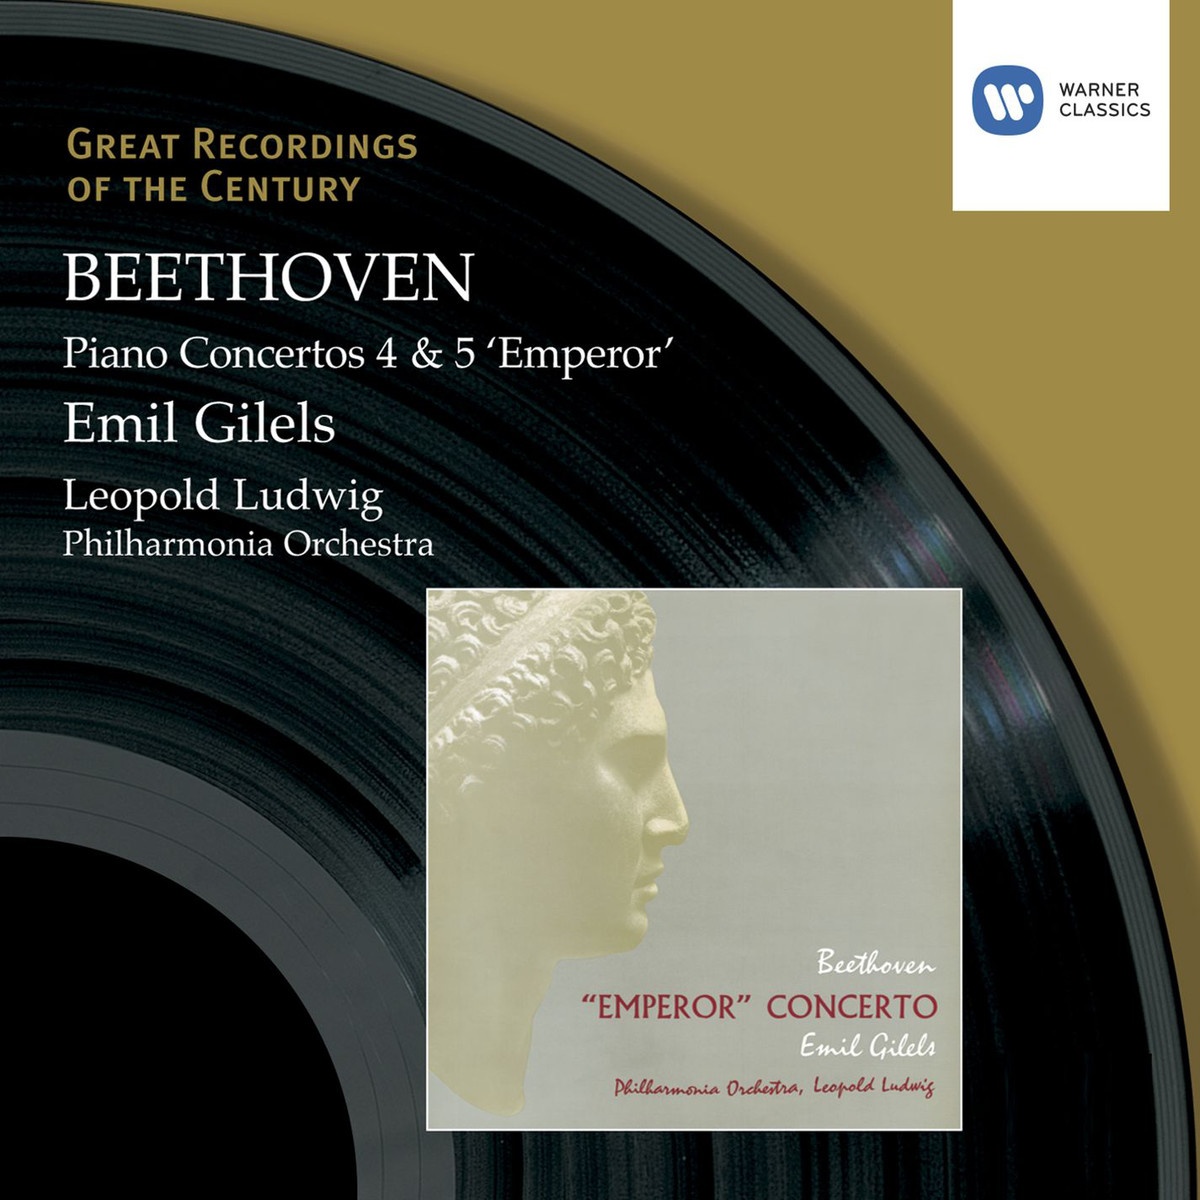 Concerto for Piano and Orchestra No. 5, 'Emperor' Op. 73 (2005 Digital Remaster): Allegro